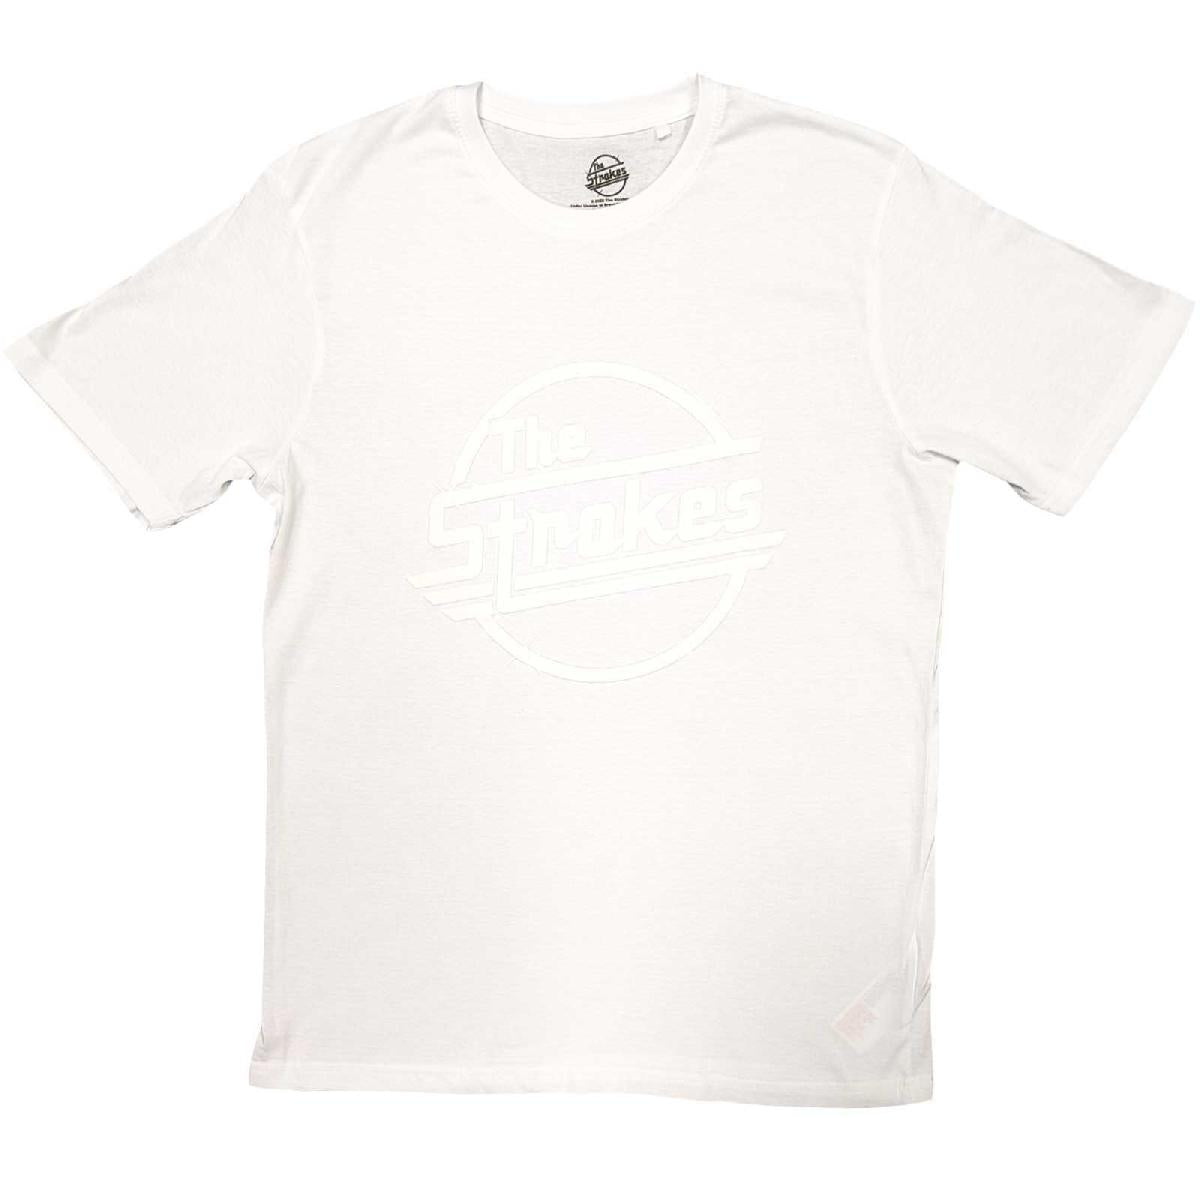 The Strokes Unisex Hi-Build T-Shirt: OG Magna (White-On-White)